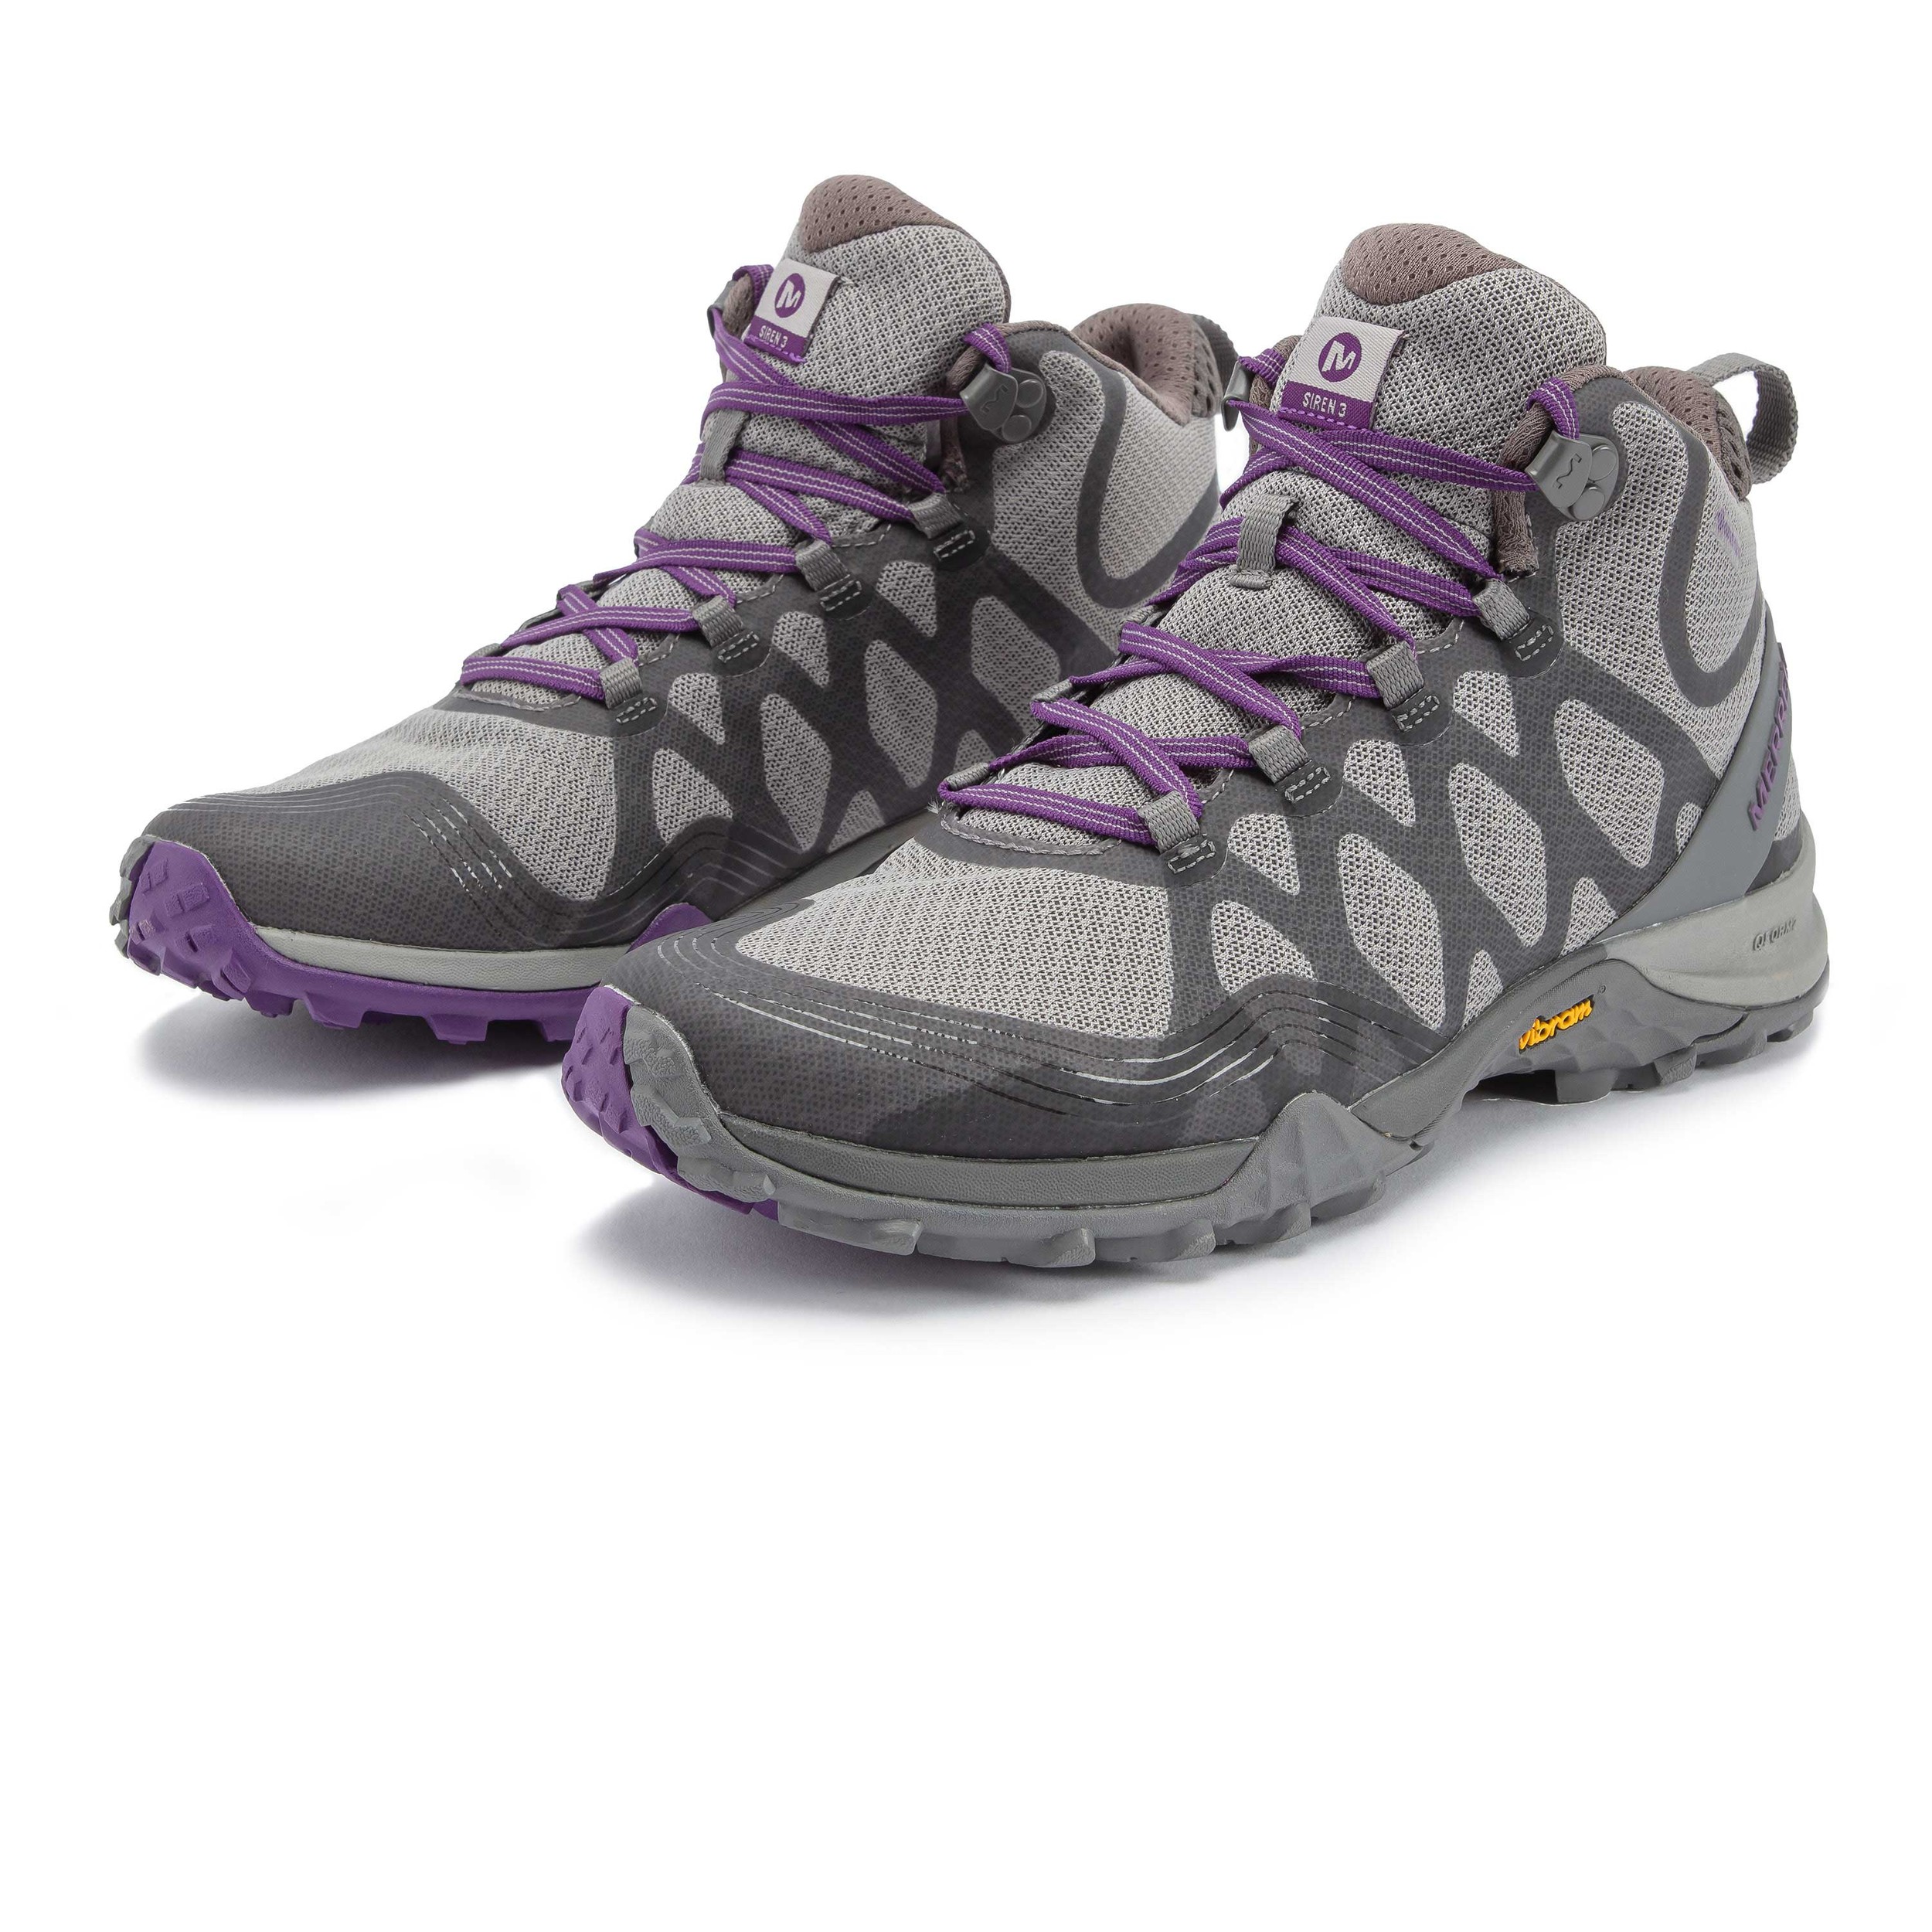 Merrell Siren 3 Mid GORE-TEX para mujer botas de trekking